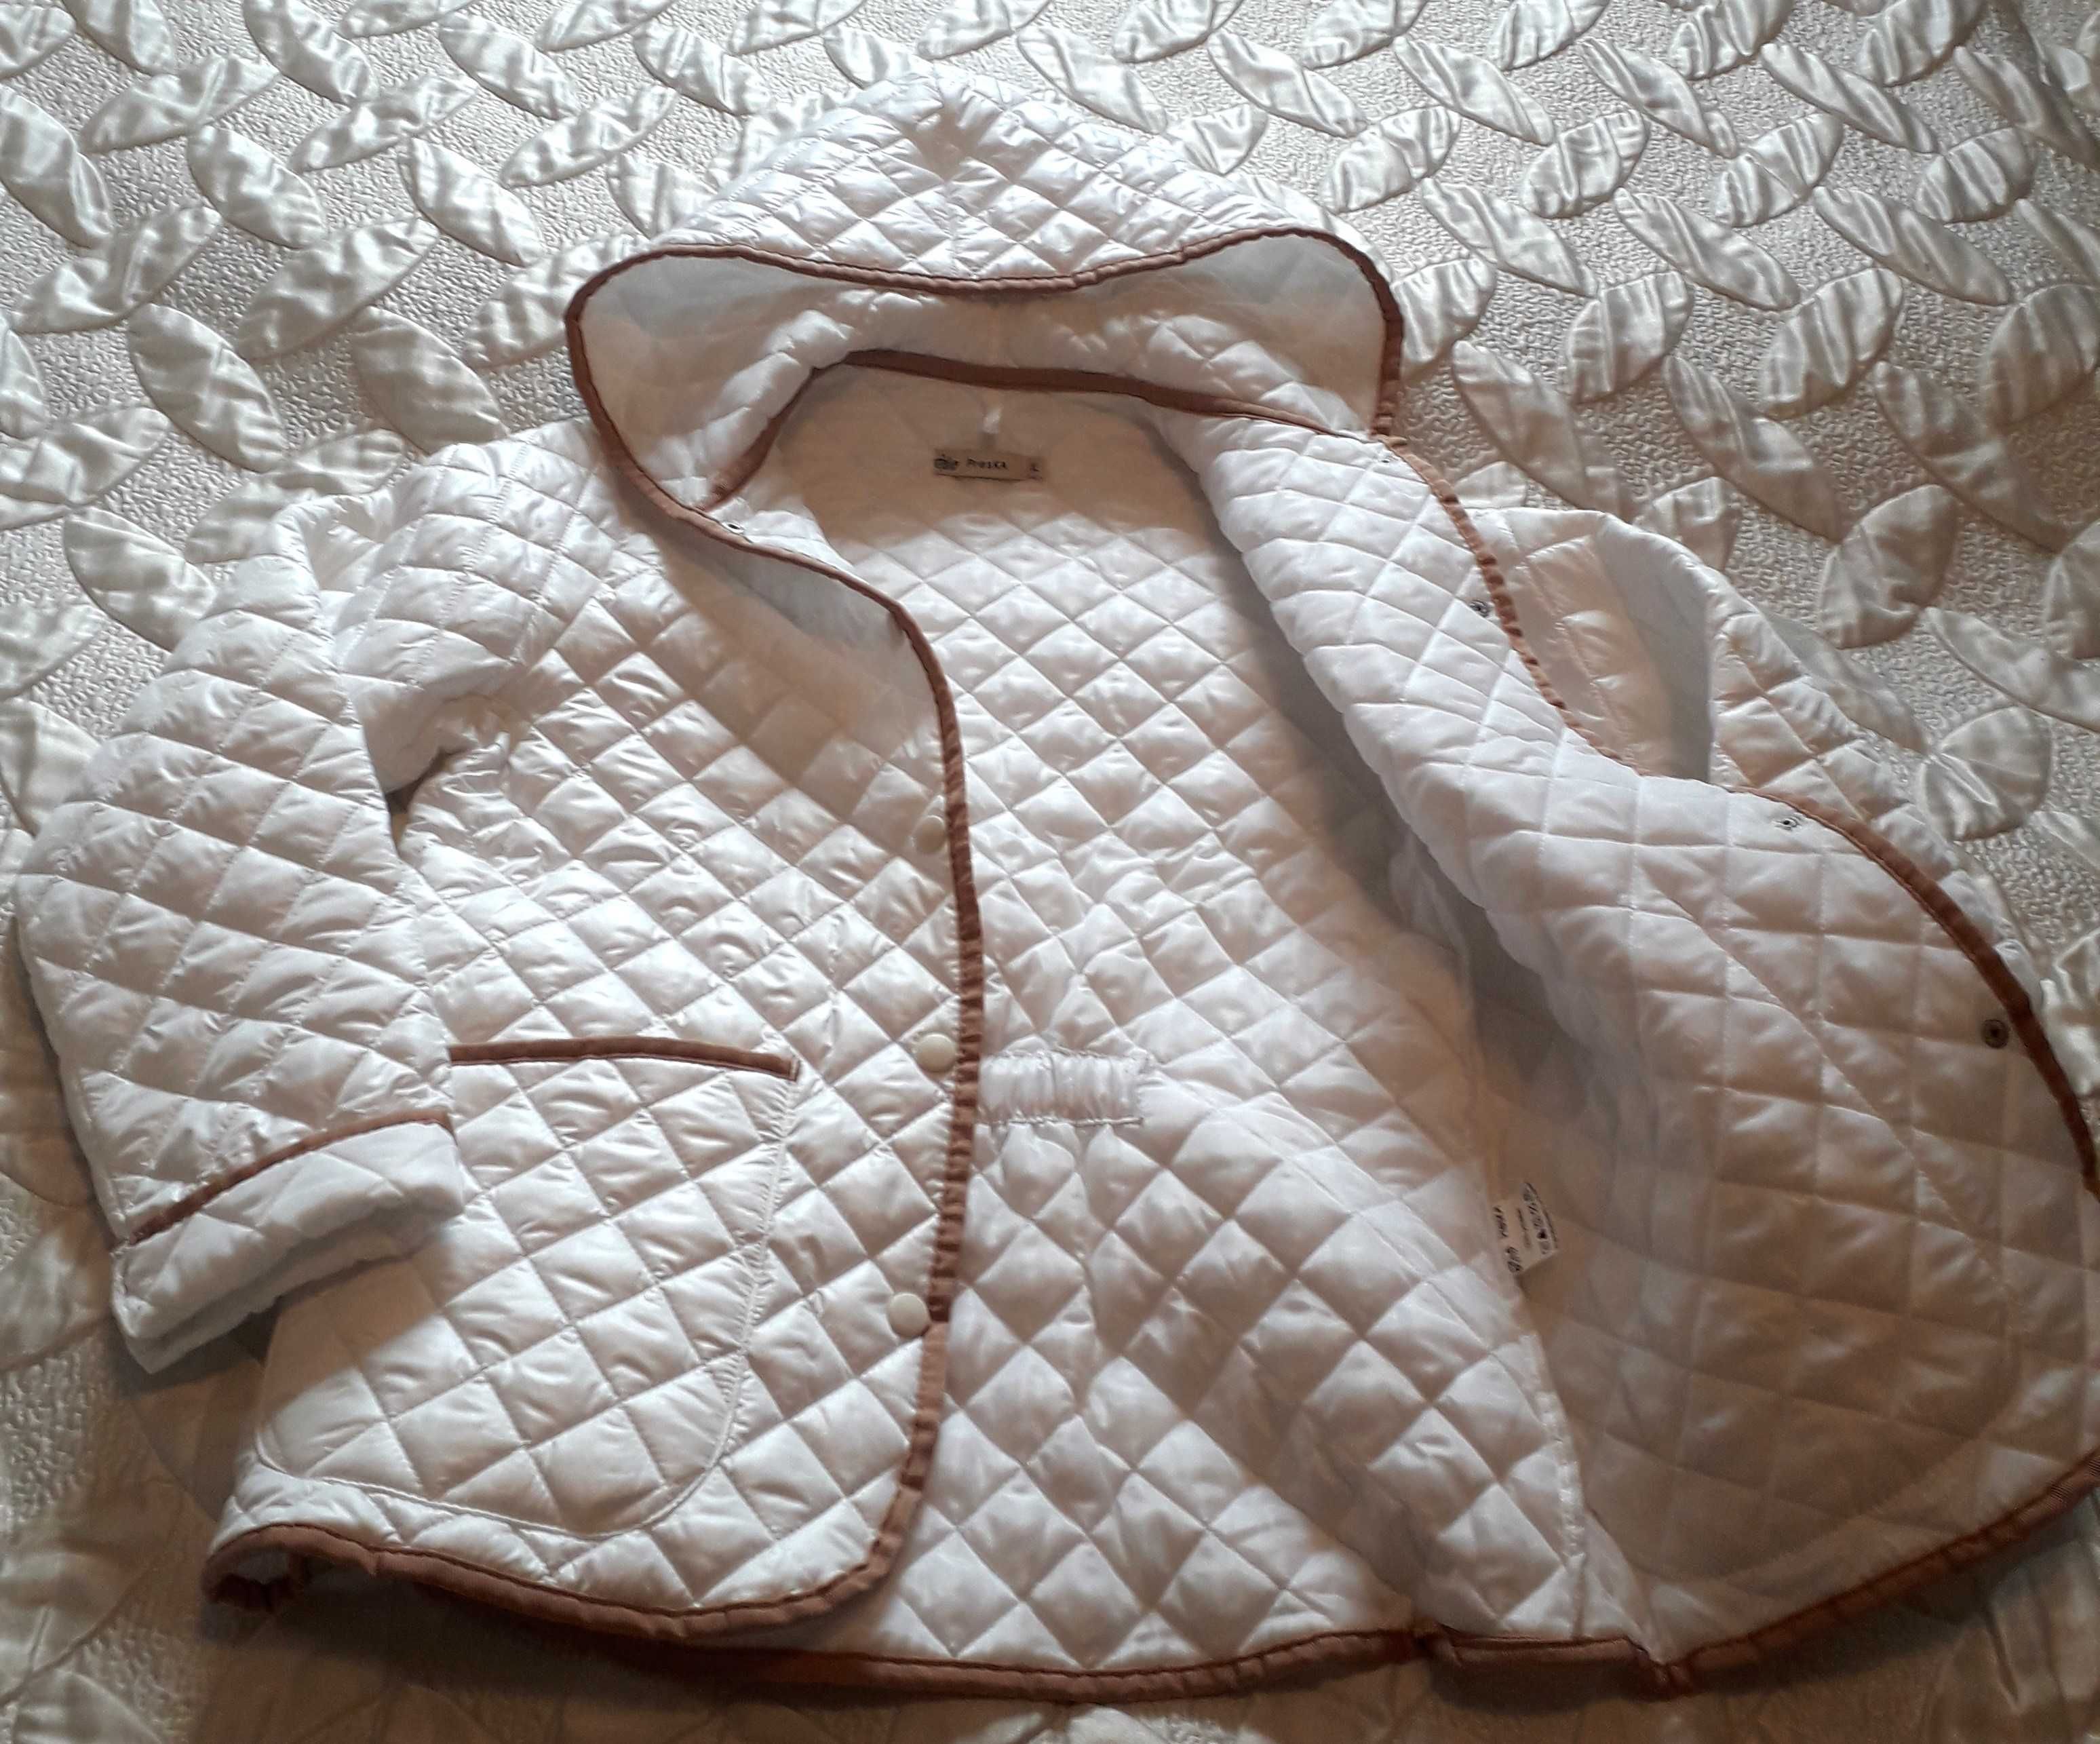 Biała kurteczka pikowana z kapturem, PRESKA, XL, nowa